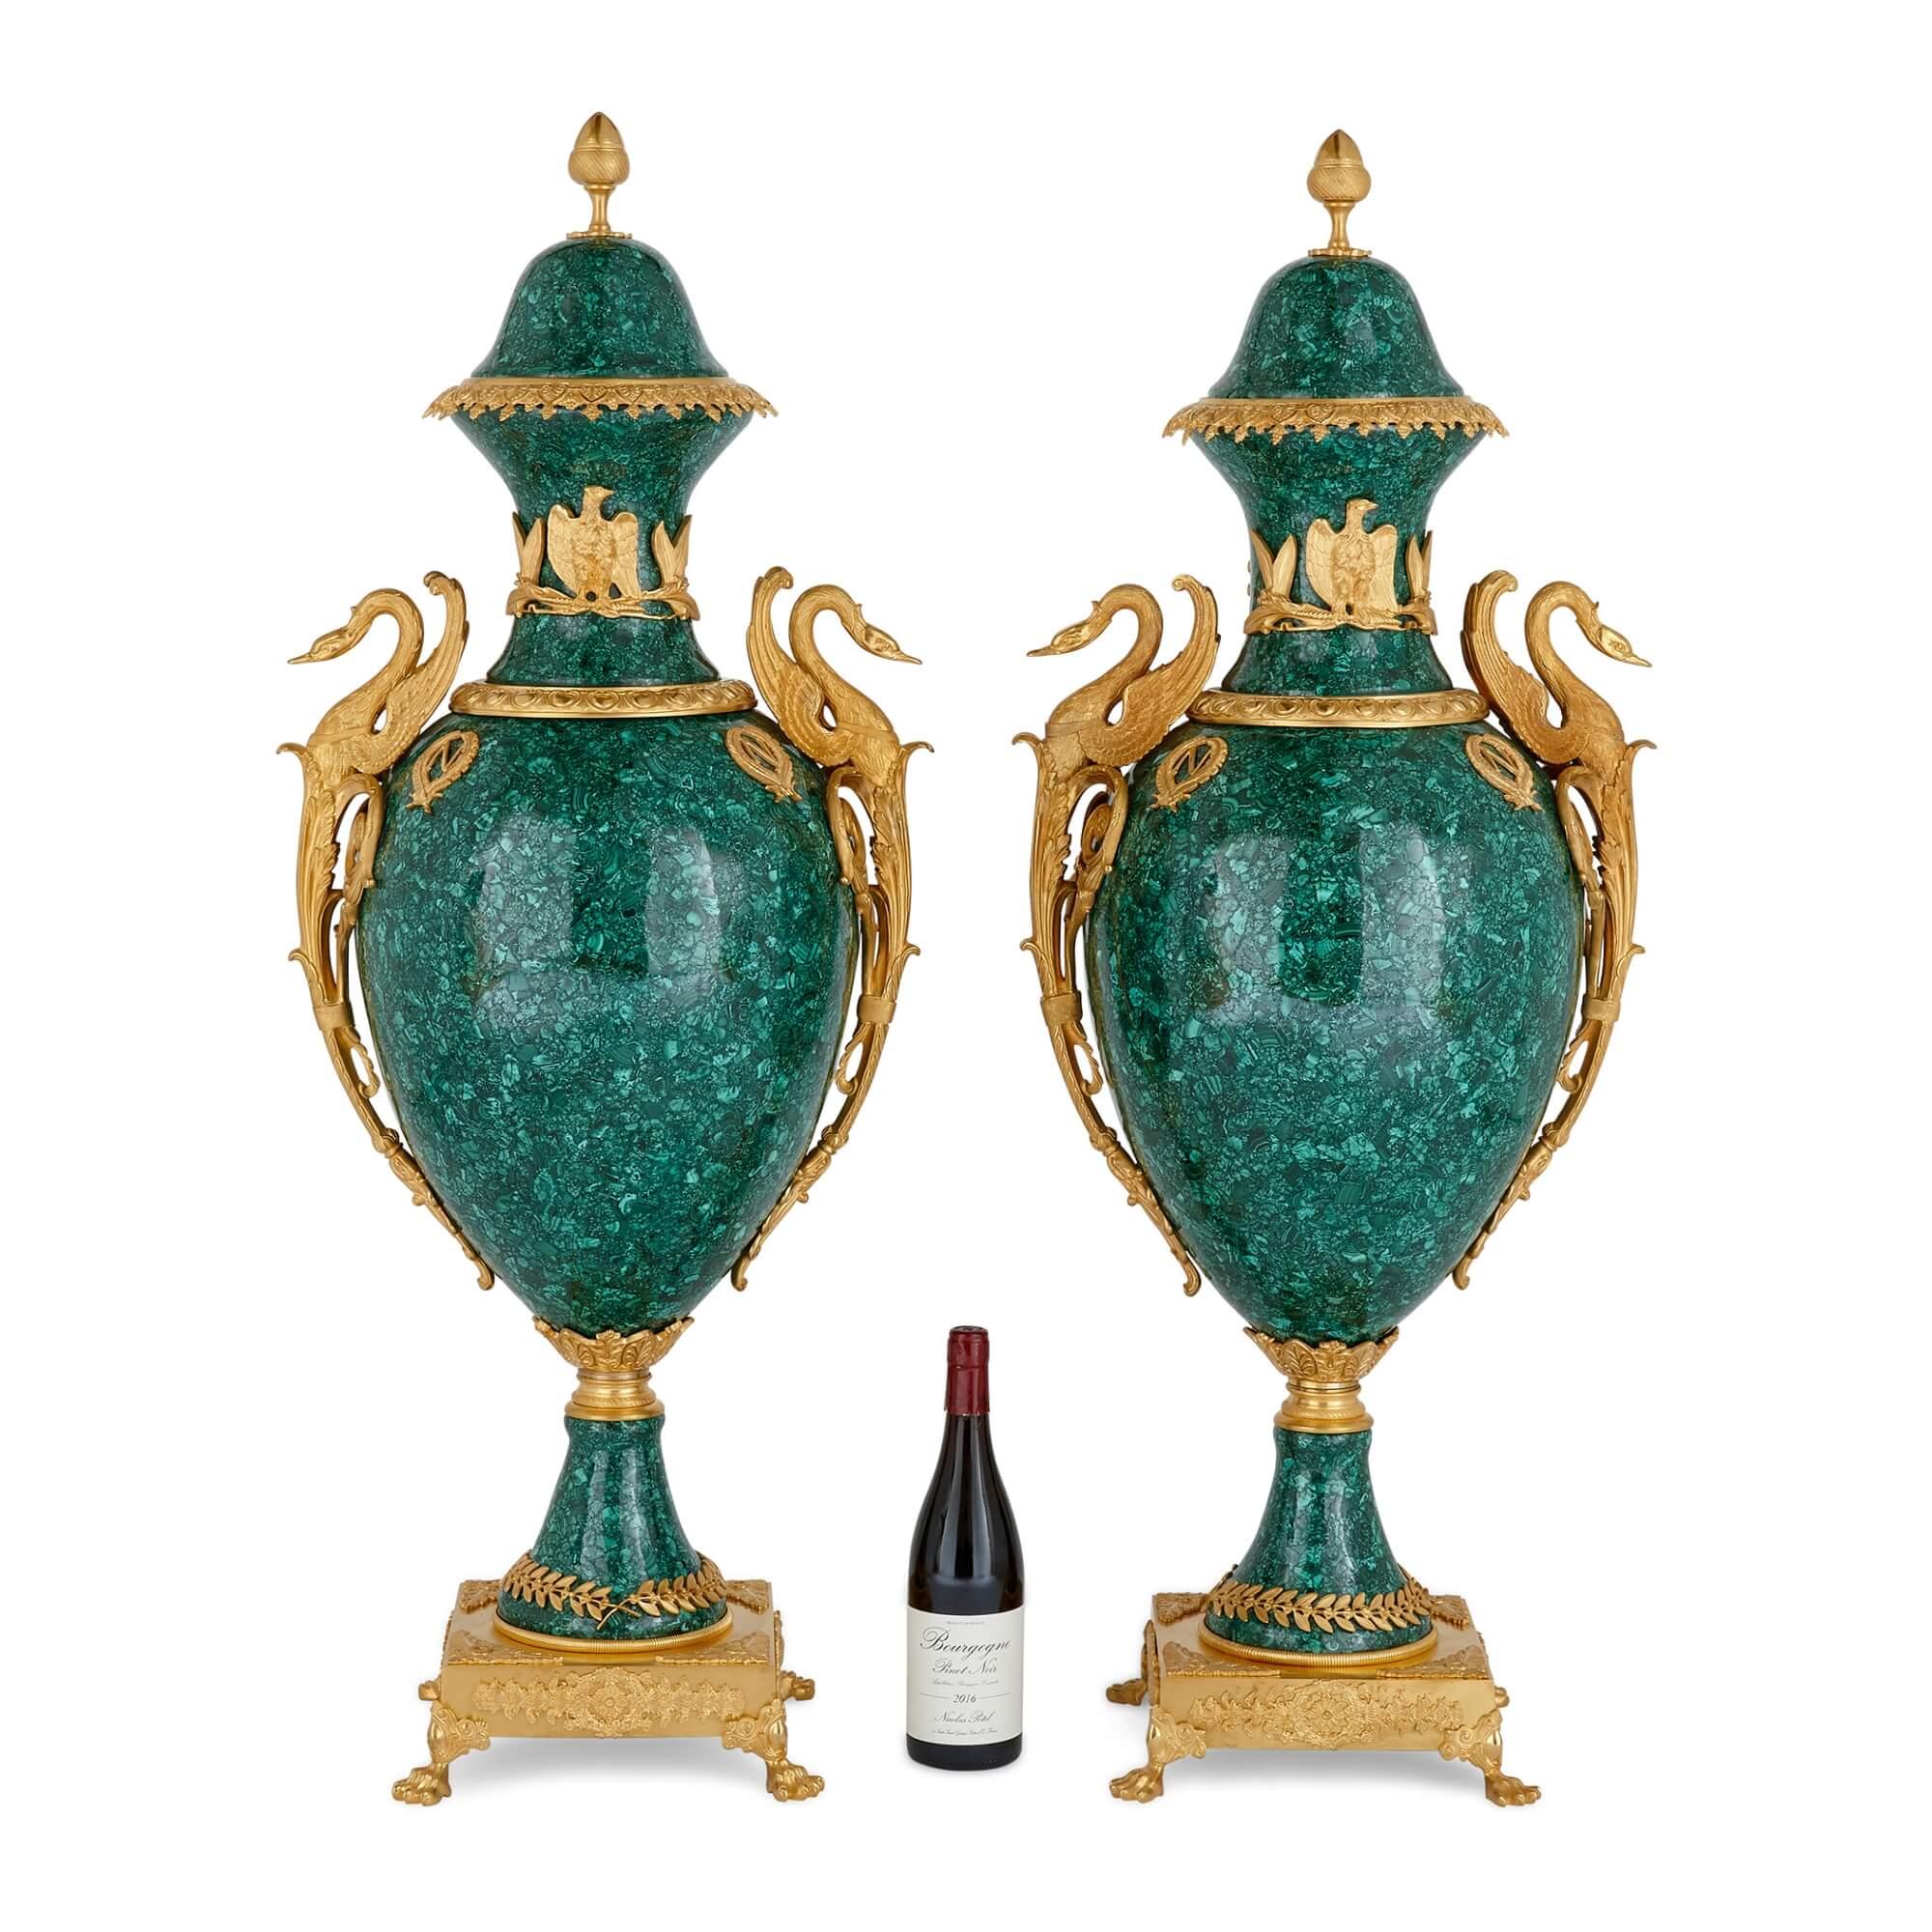 Ces splendides vases montés en malachite et en bronze doré sont exécutés dans le style Empire français et sont ornés d'un décor doré qui évoque sans équivoque la confiance, la fierté et la victoire. De chaque côté, ils présentent de magnifiques